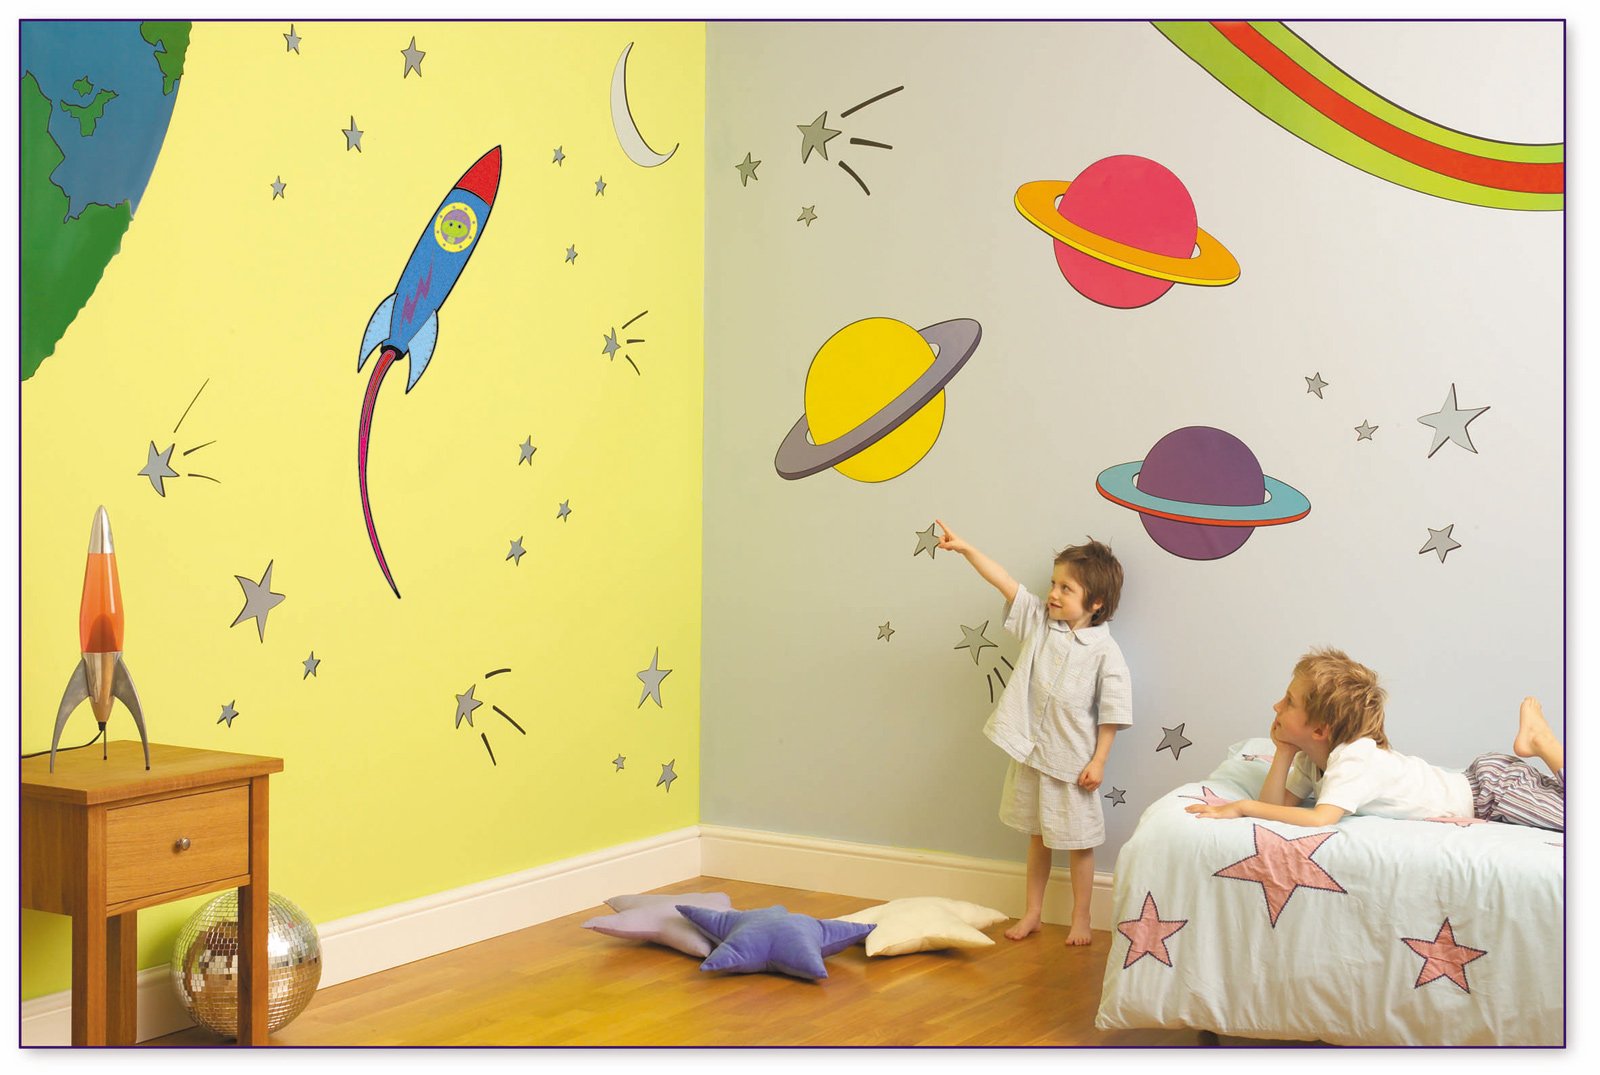 Разрисовать стены в спальне в детском саду